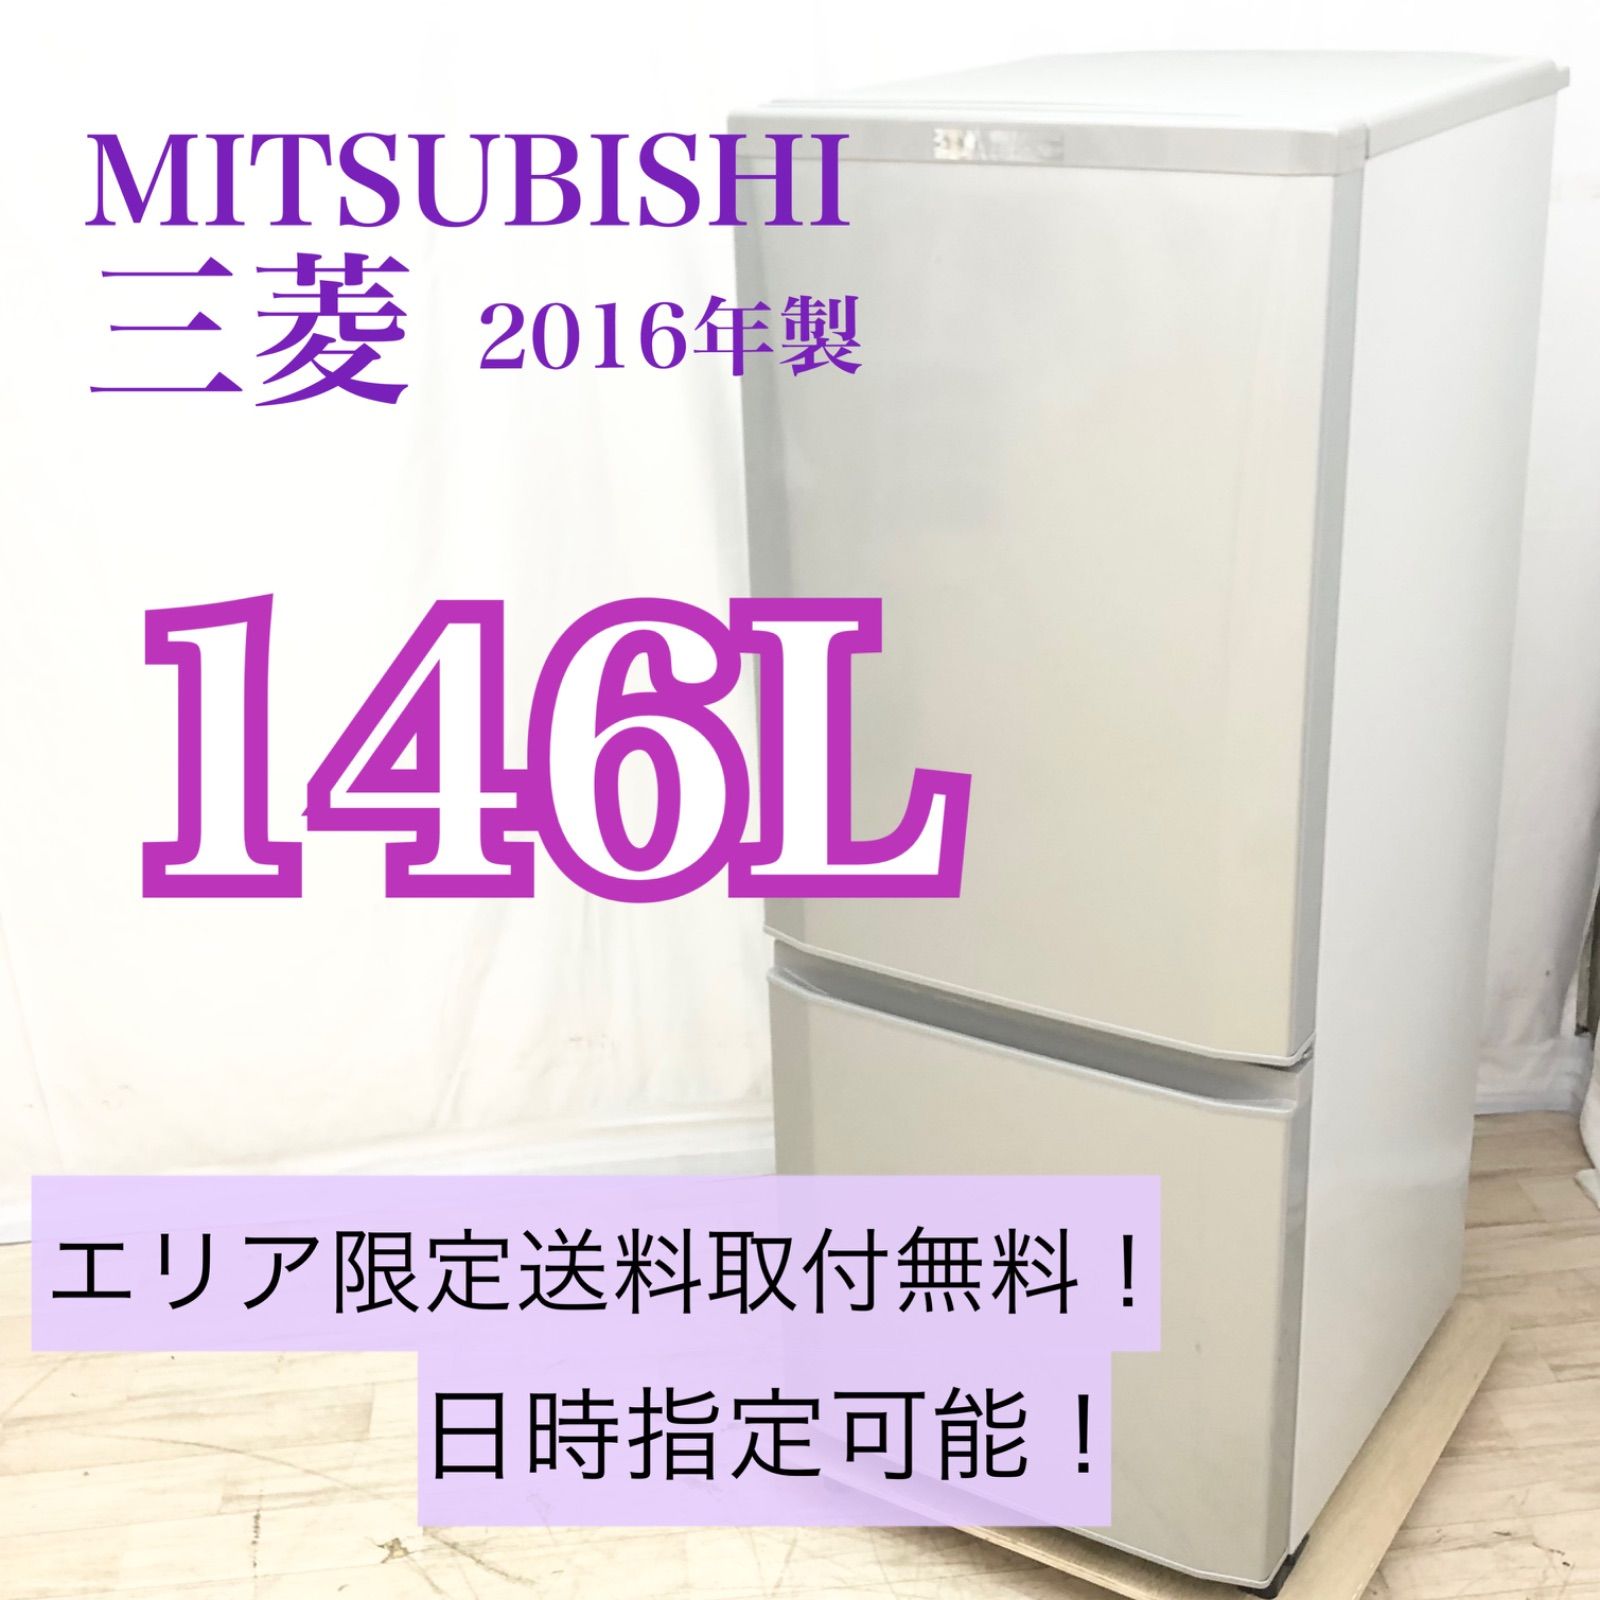 三菱製冷蔵庫 MR-G42N-T1をお譲りします。 - キッチン家電